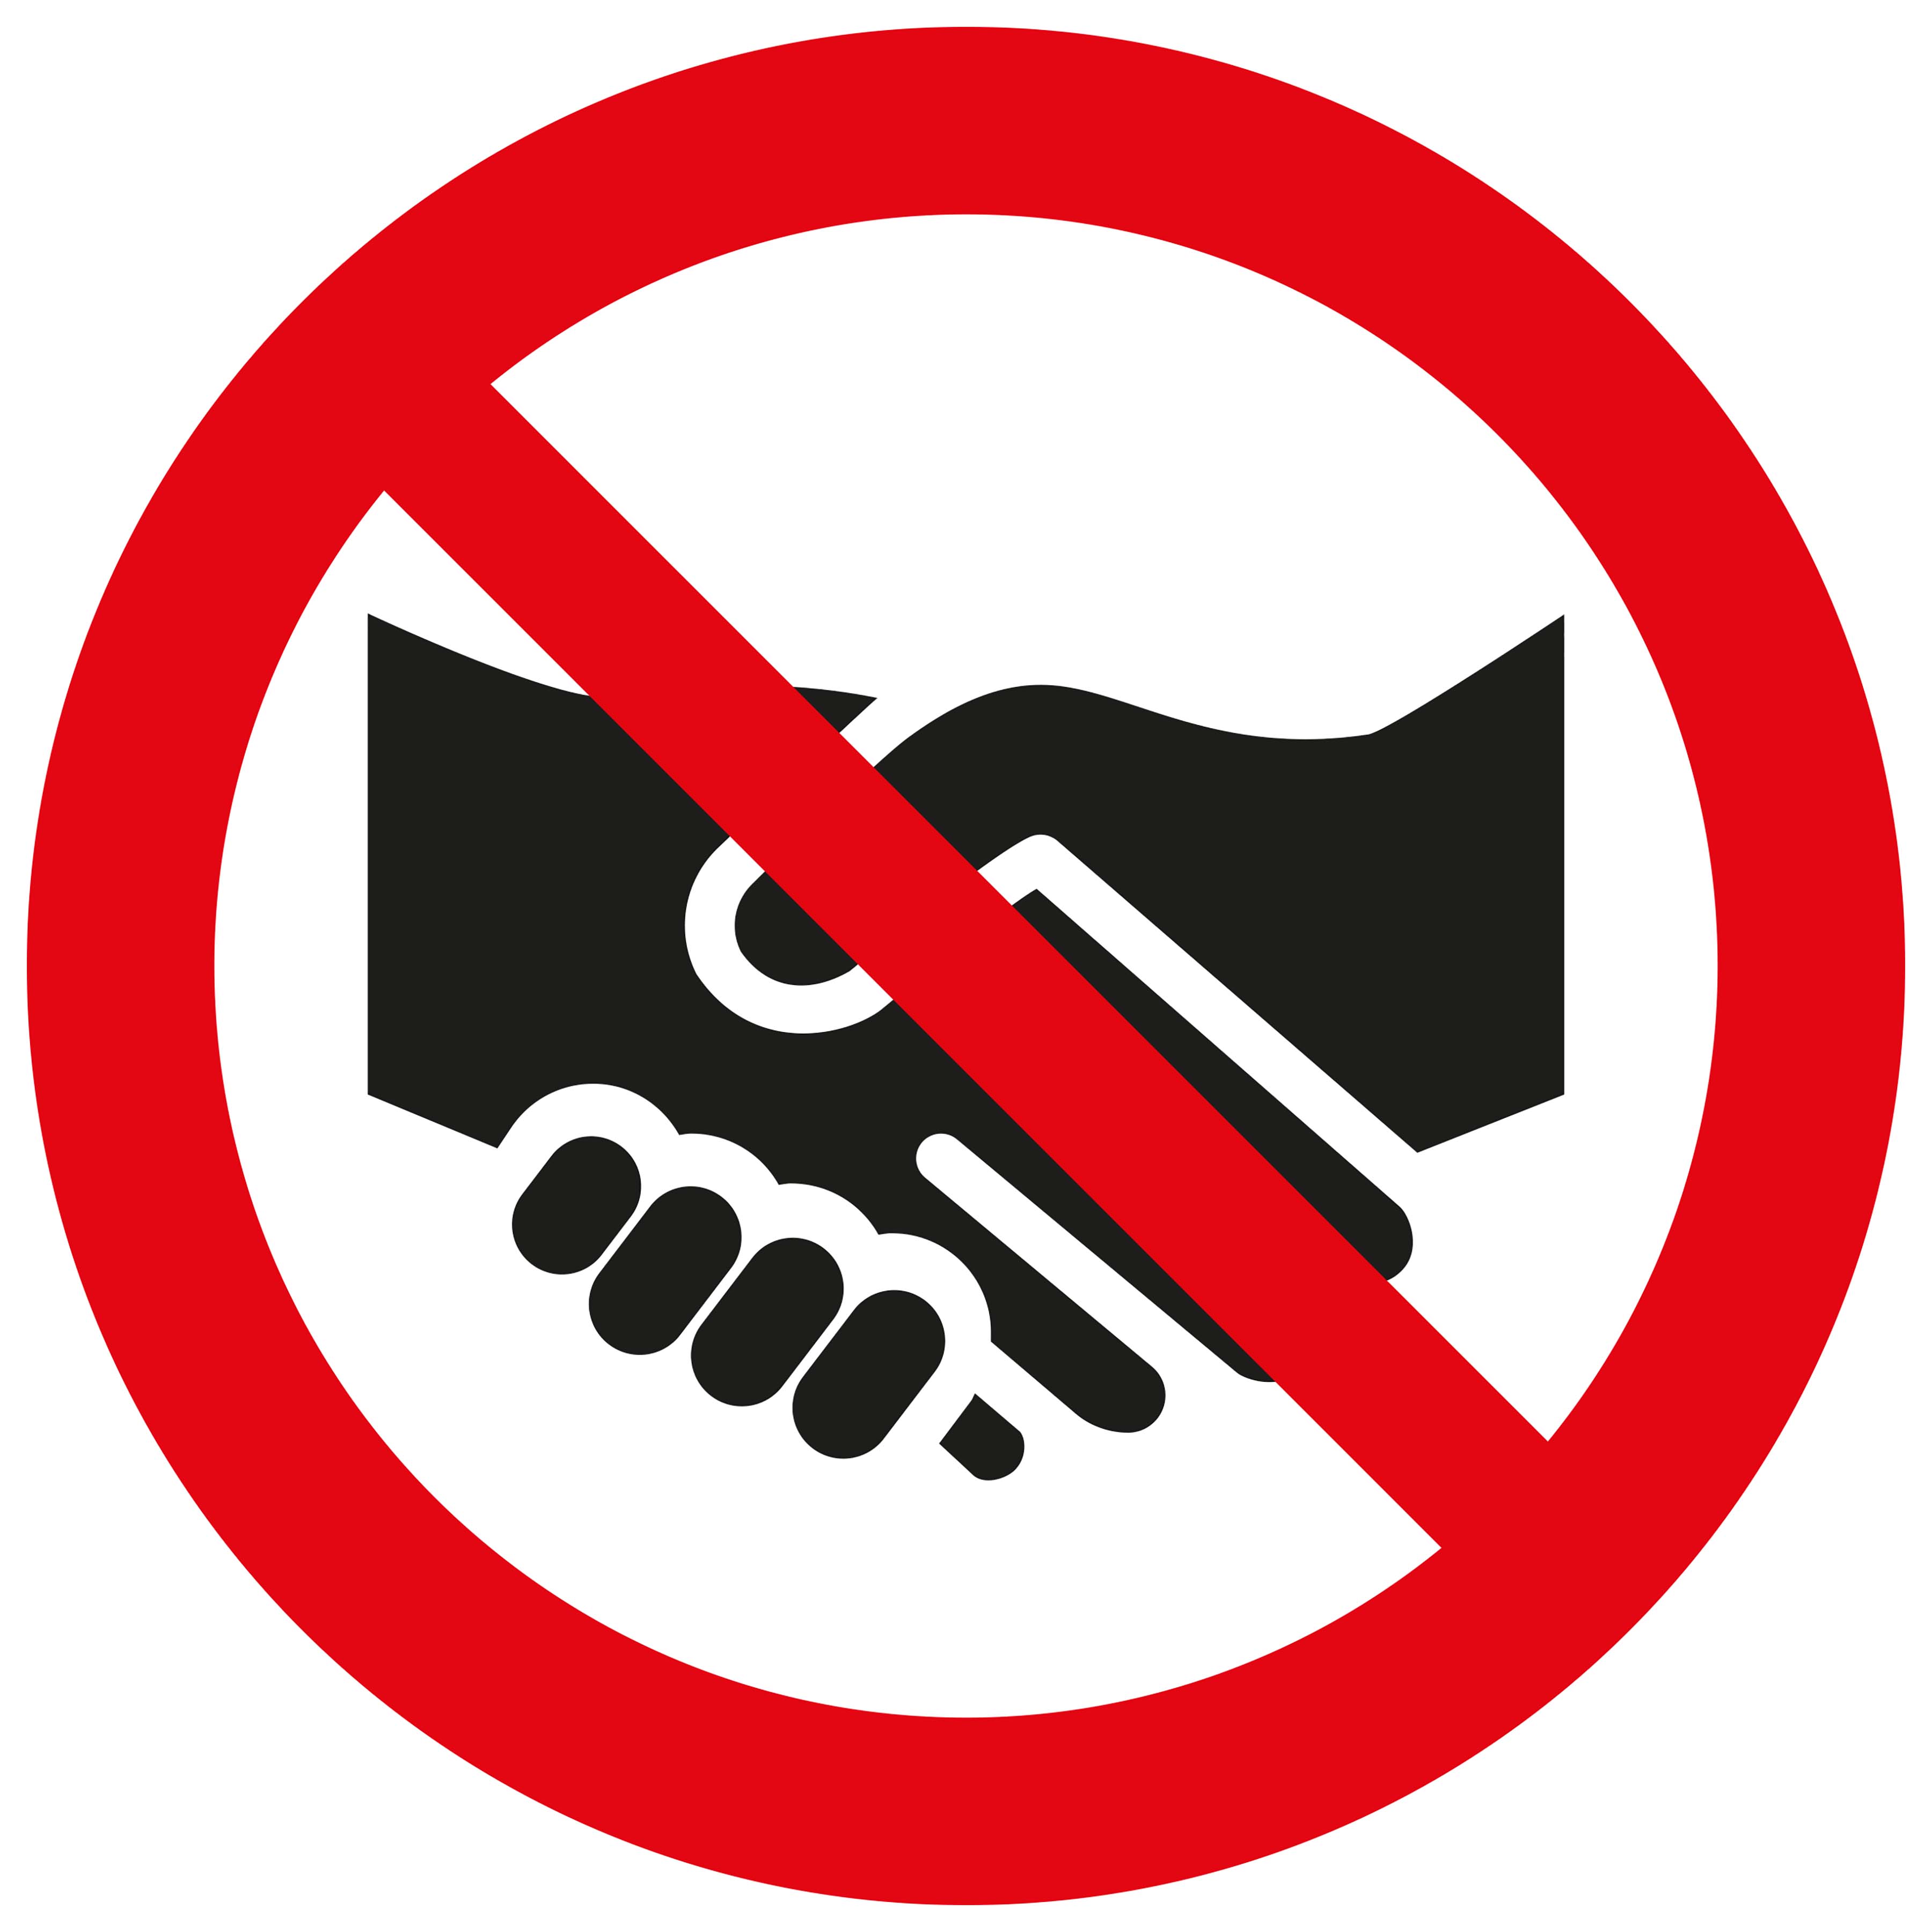 Pickup sticker Wij geven u geen hand - We do not shake hands with you - Nous ne te serrons pas la main - Wir geben Ihnen nicht die Hand - social distance  